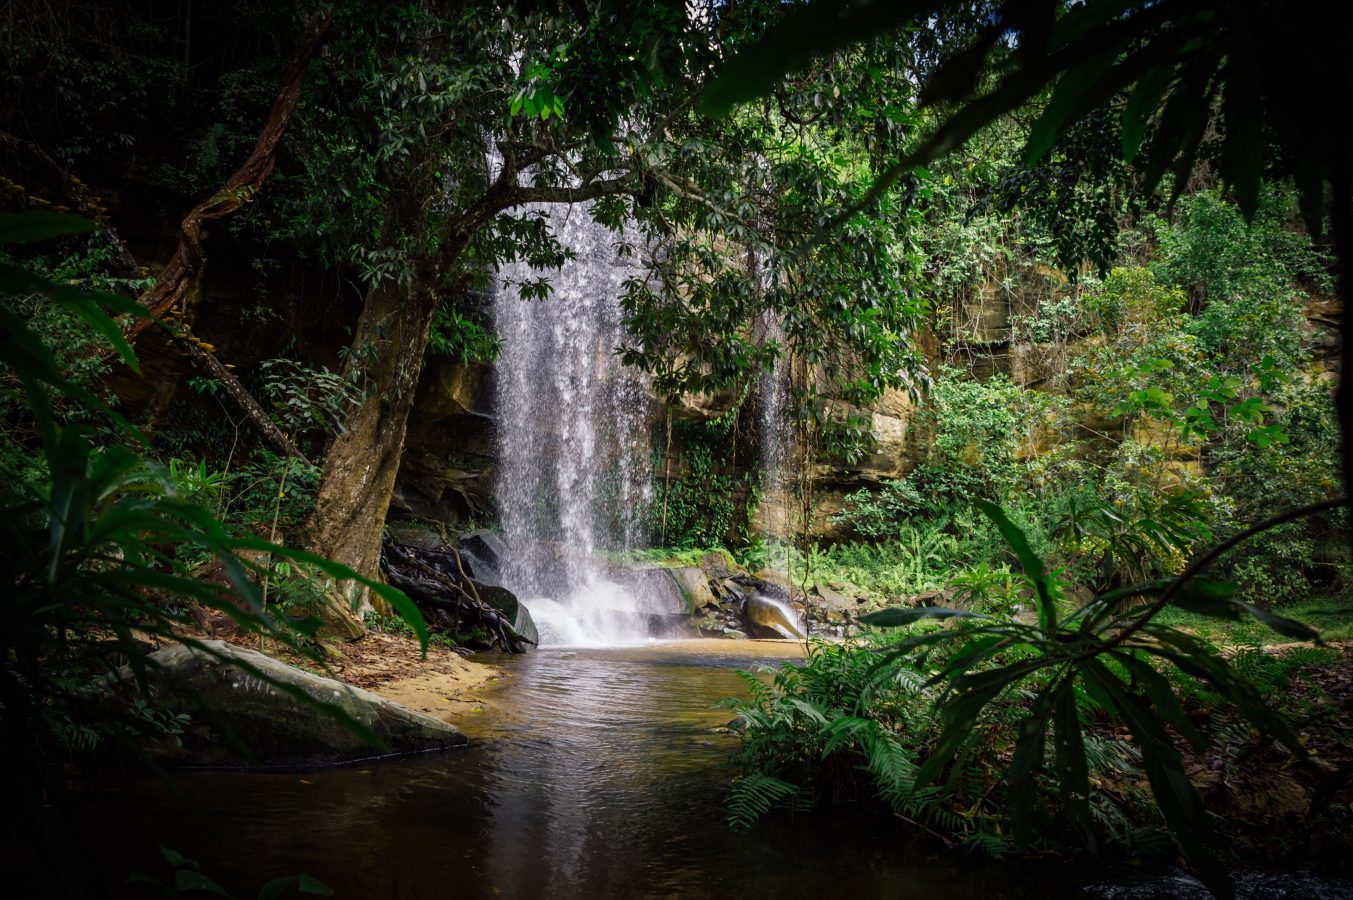 Beautiful waterfall in green jungle oasis.